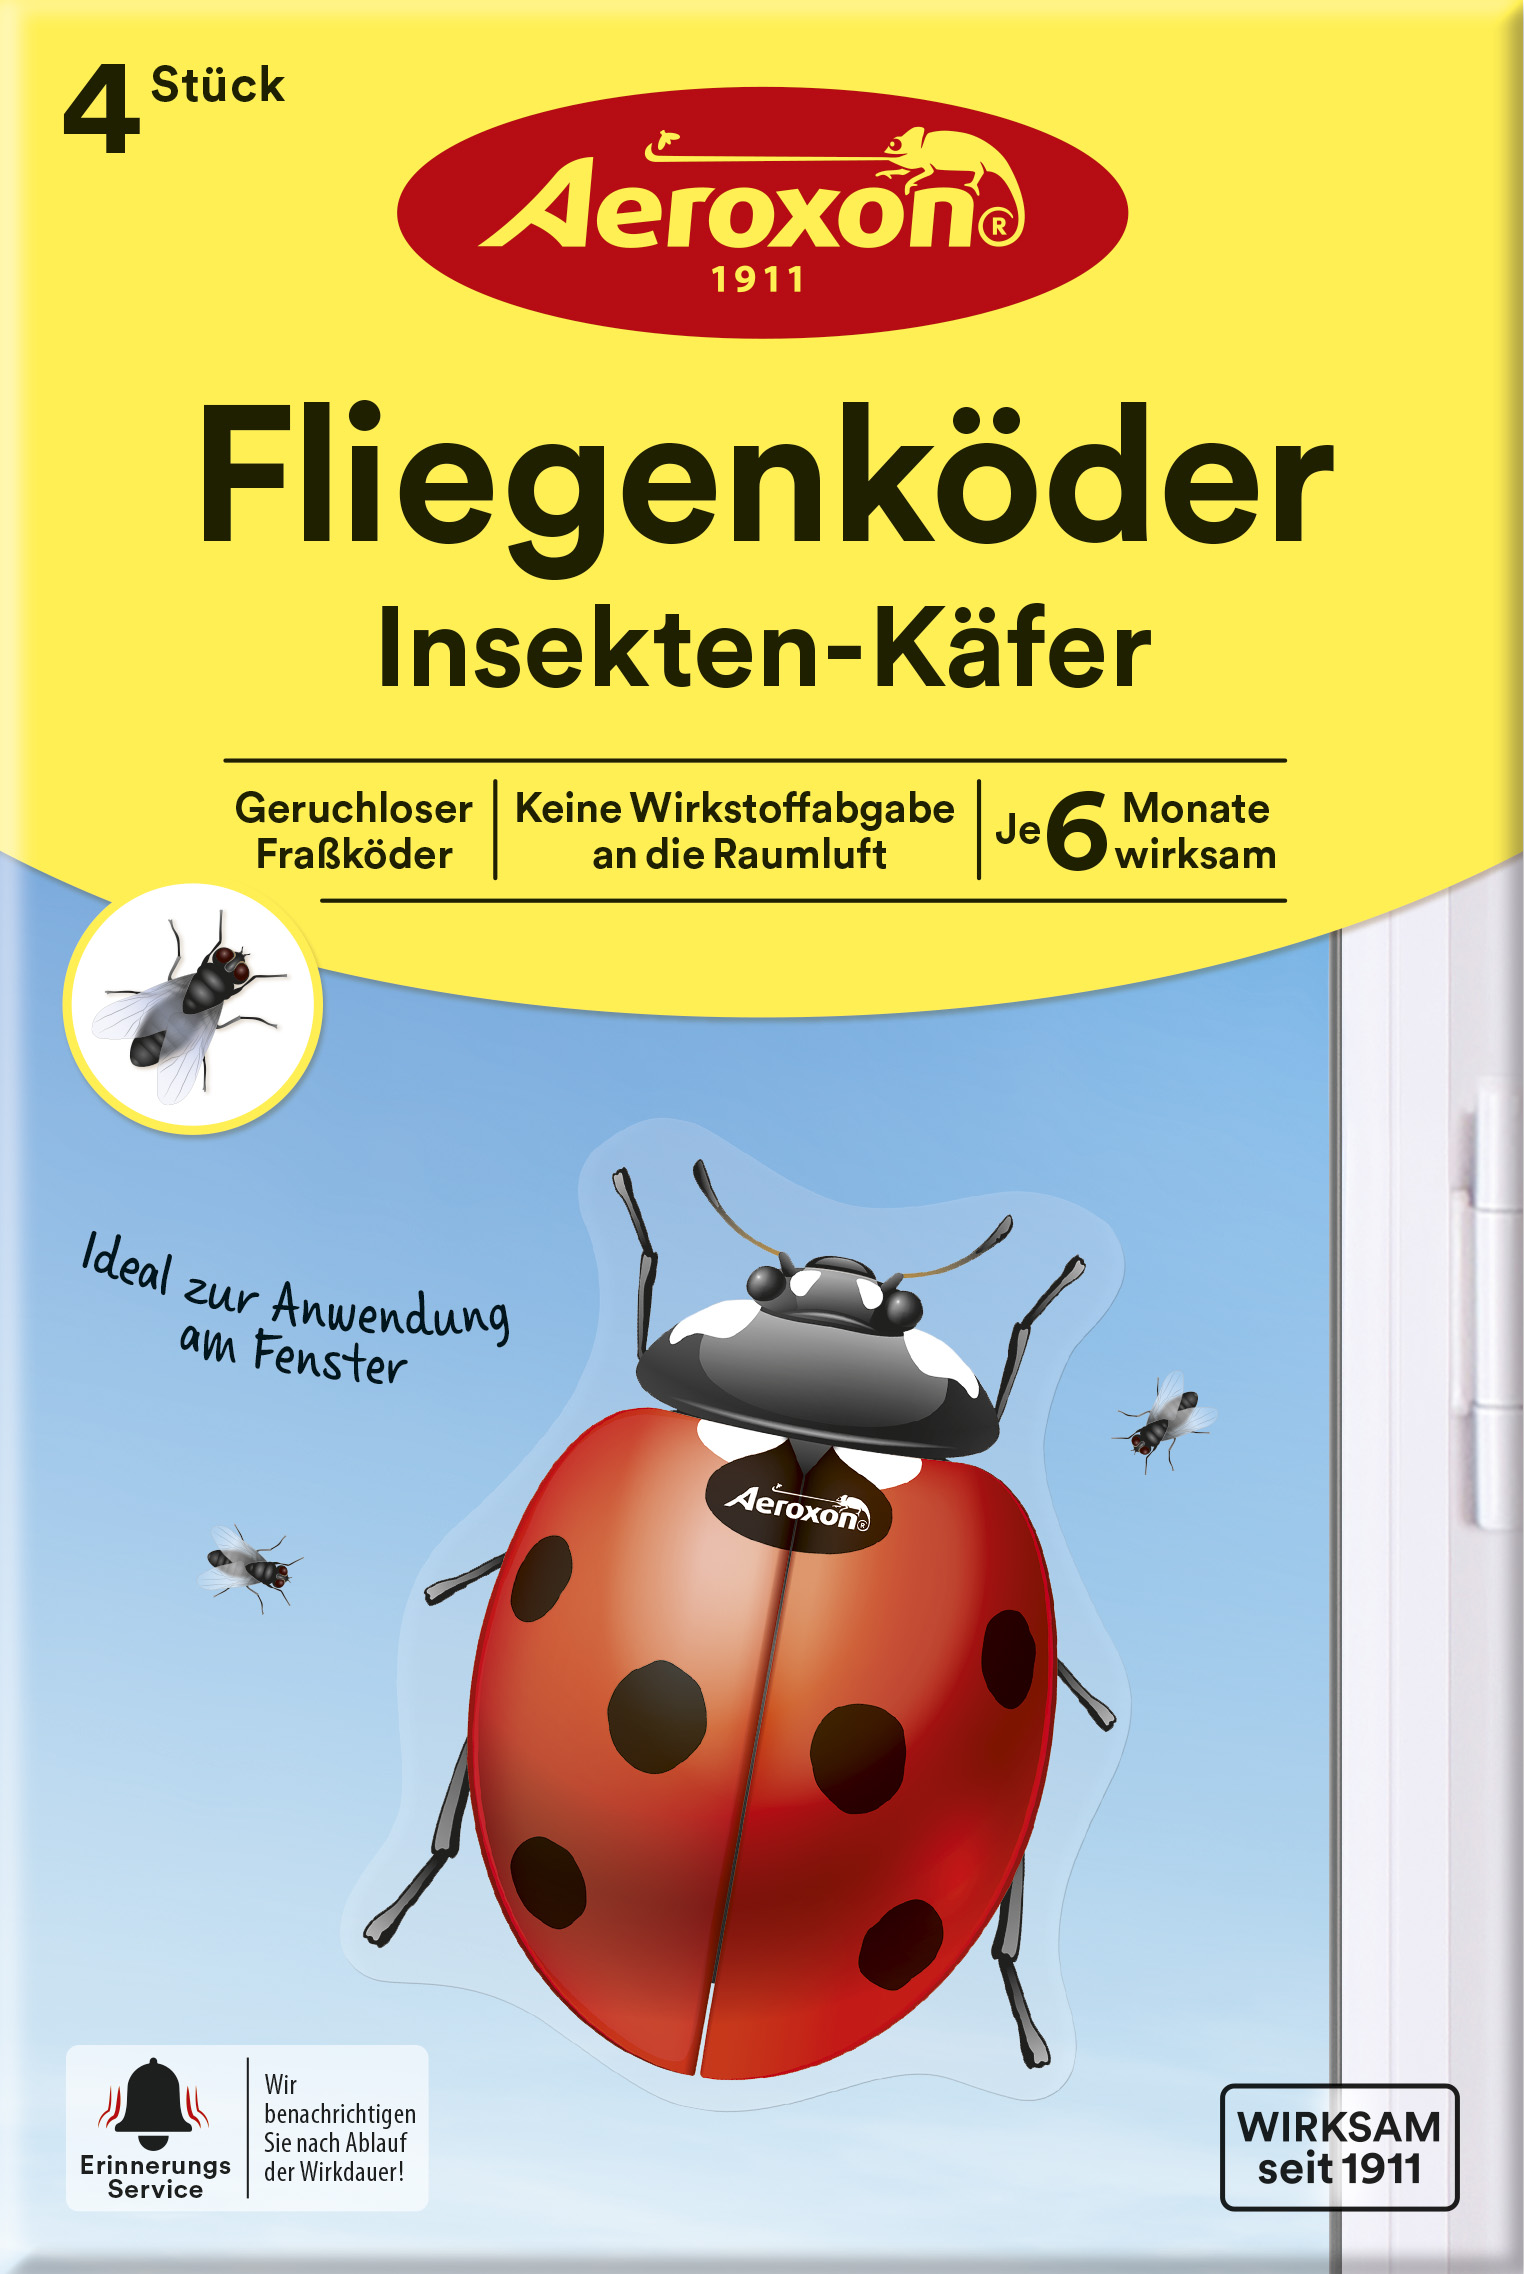 Aeroxon Fliegenköder Insekten-Käfer, 4 Stück